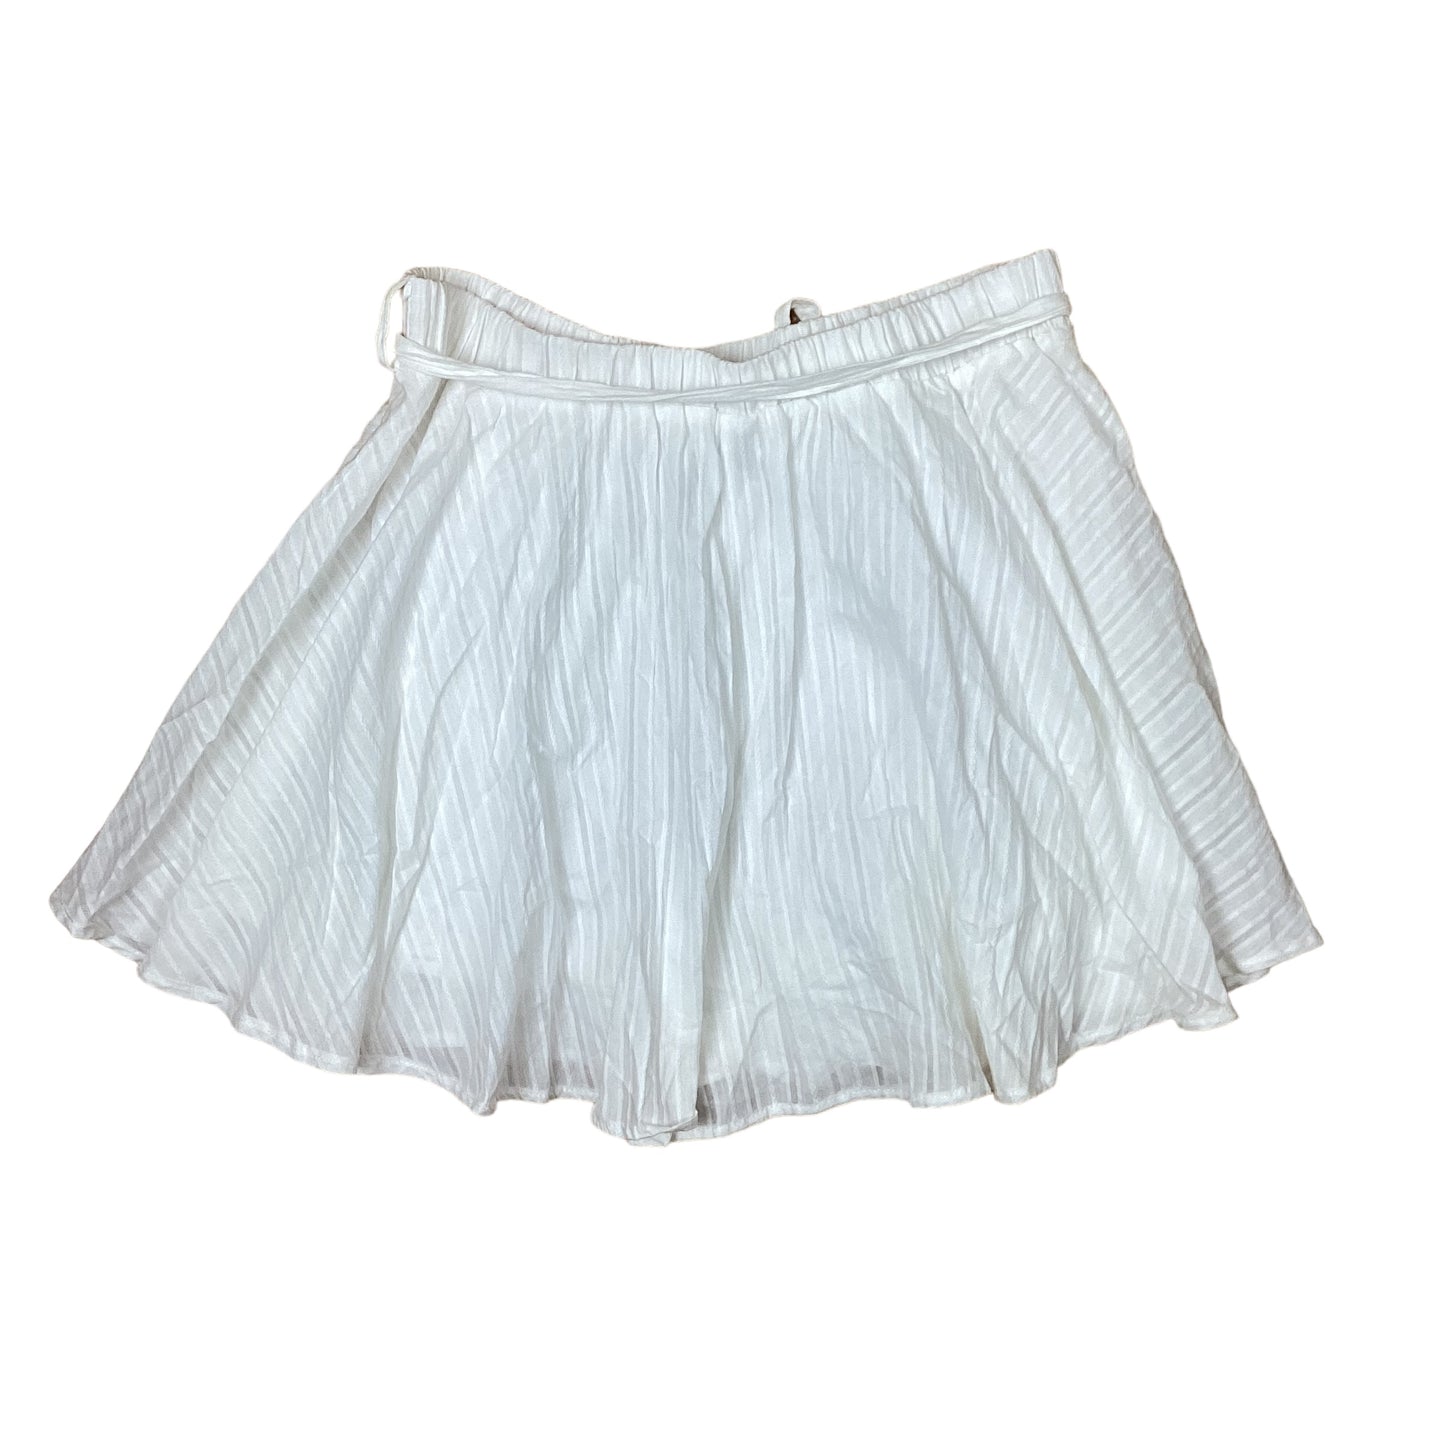 Skirt Midi By Hyfve  Size: Xl